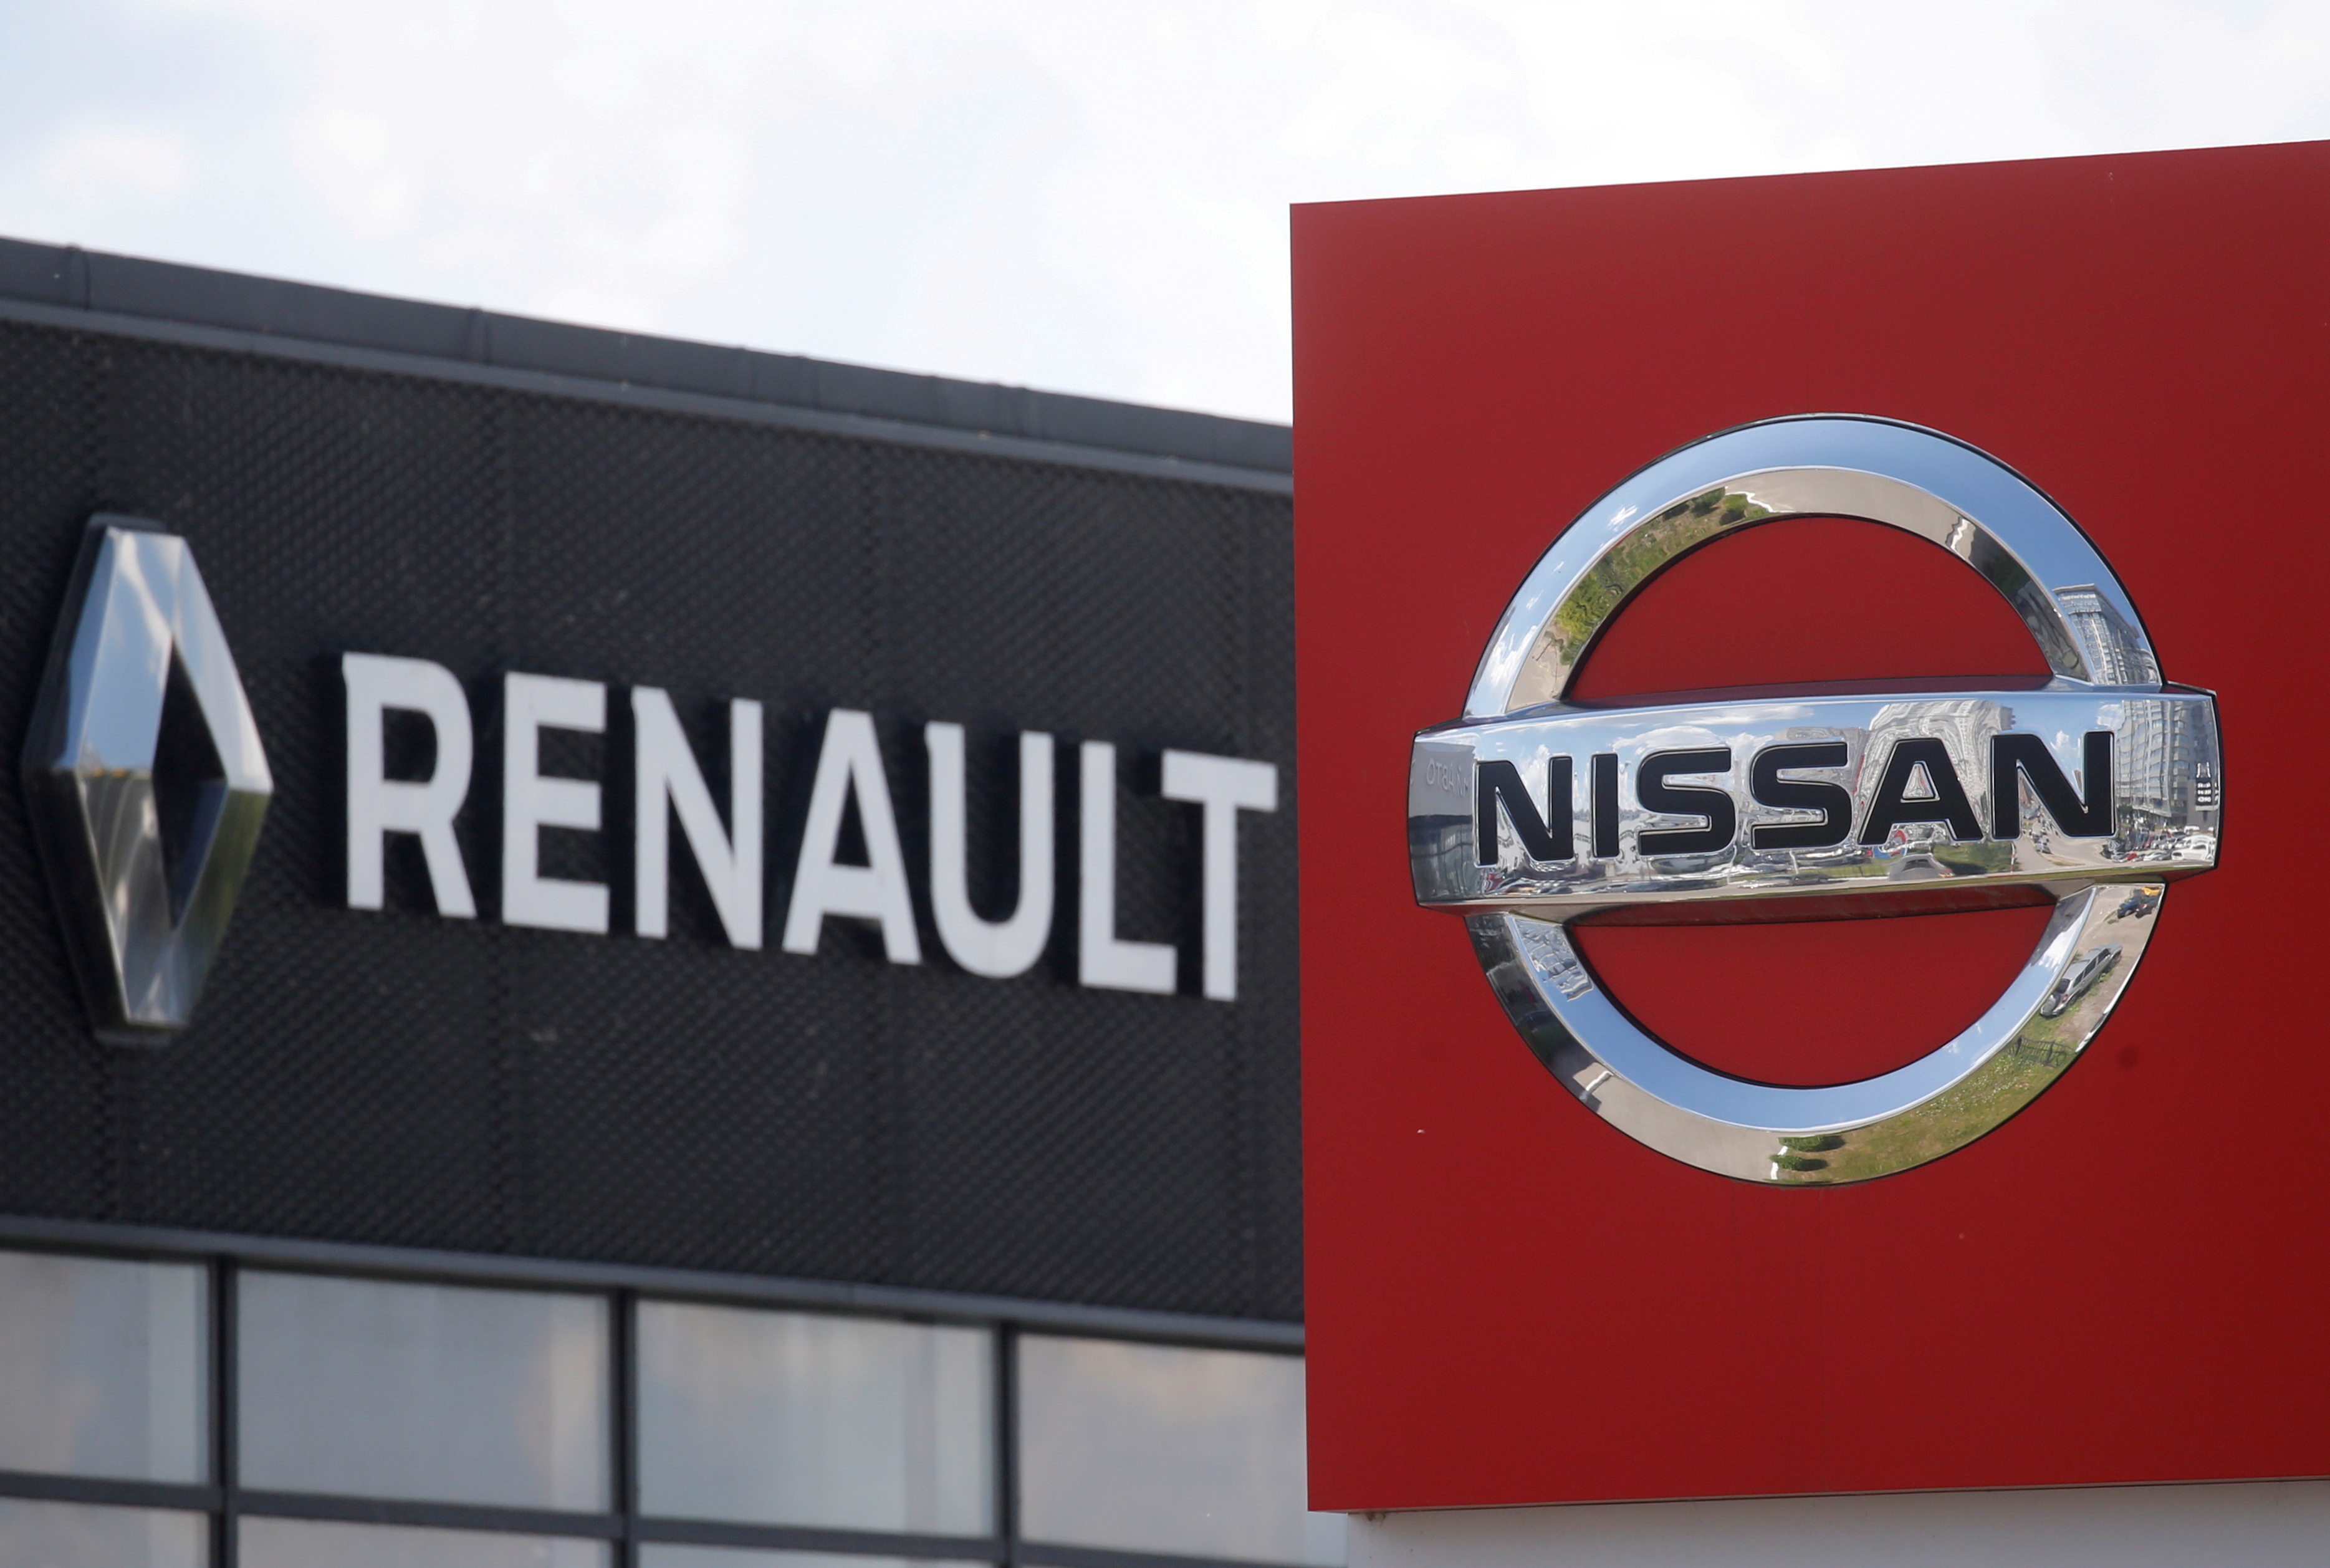 L'Etat français veut préserver l'alliance Renault-Nissan, dit Le Maire, dans l'intérêt de Renault